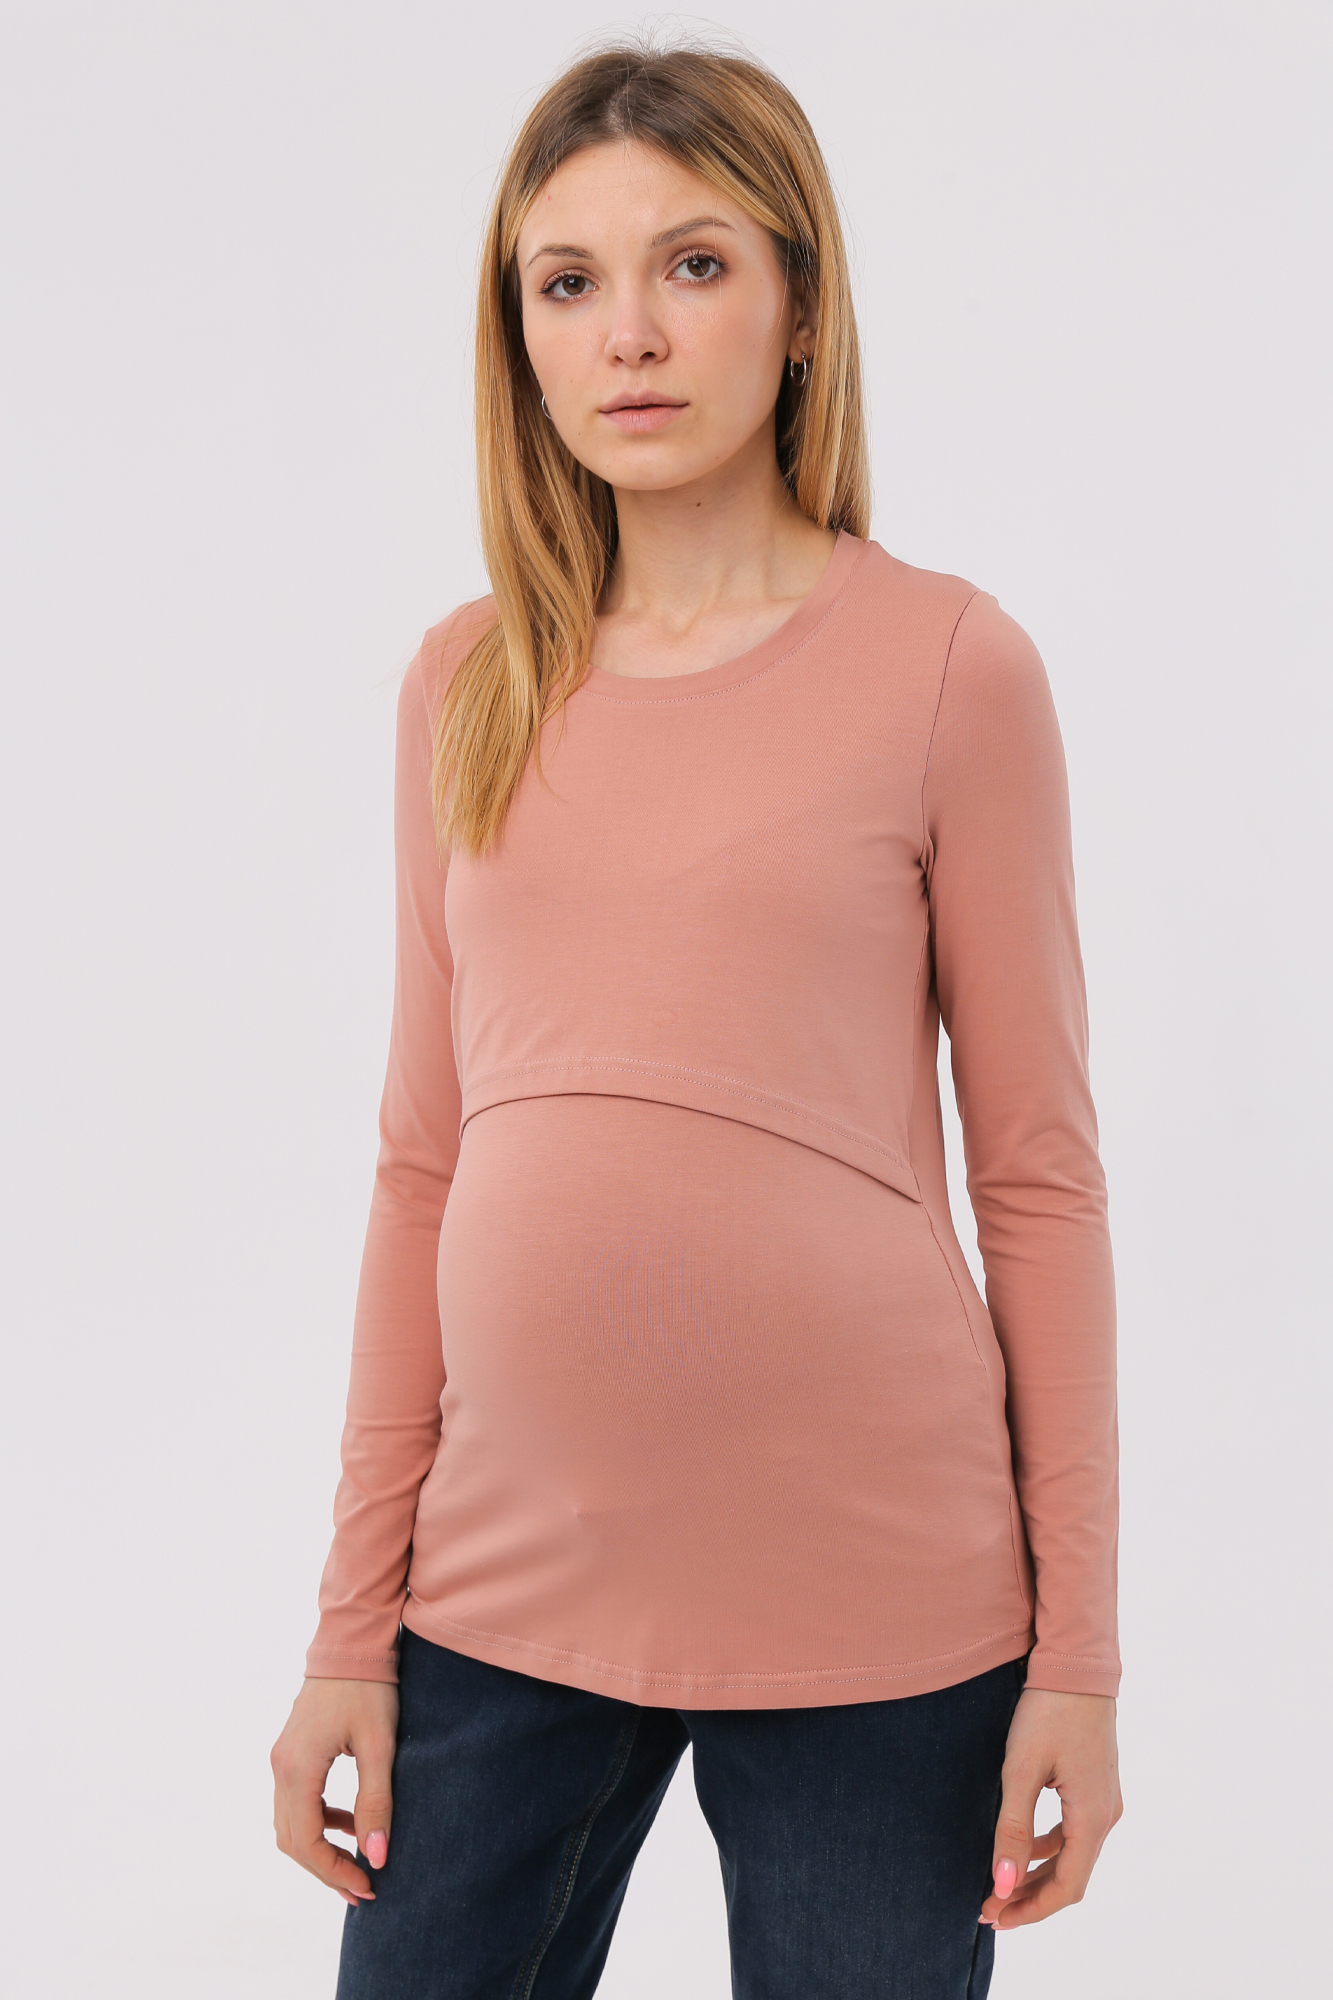 Лонгслив для беременных женский Magica bellezza МВ7038 розовый 46 RU